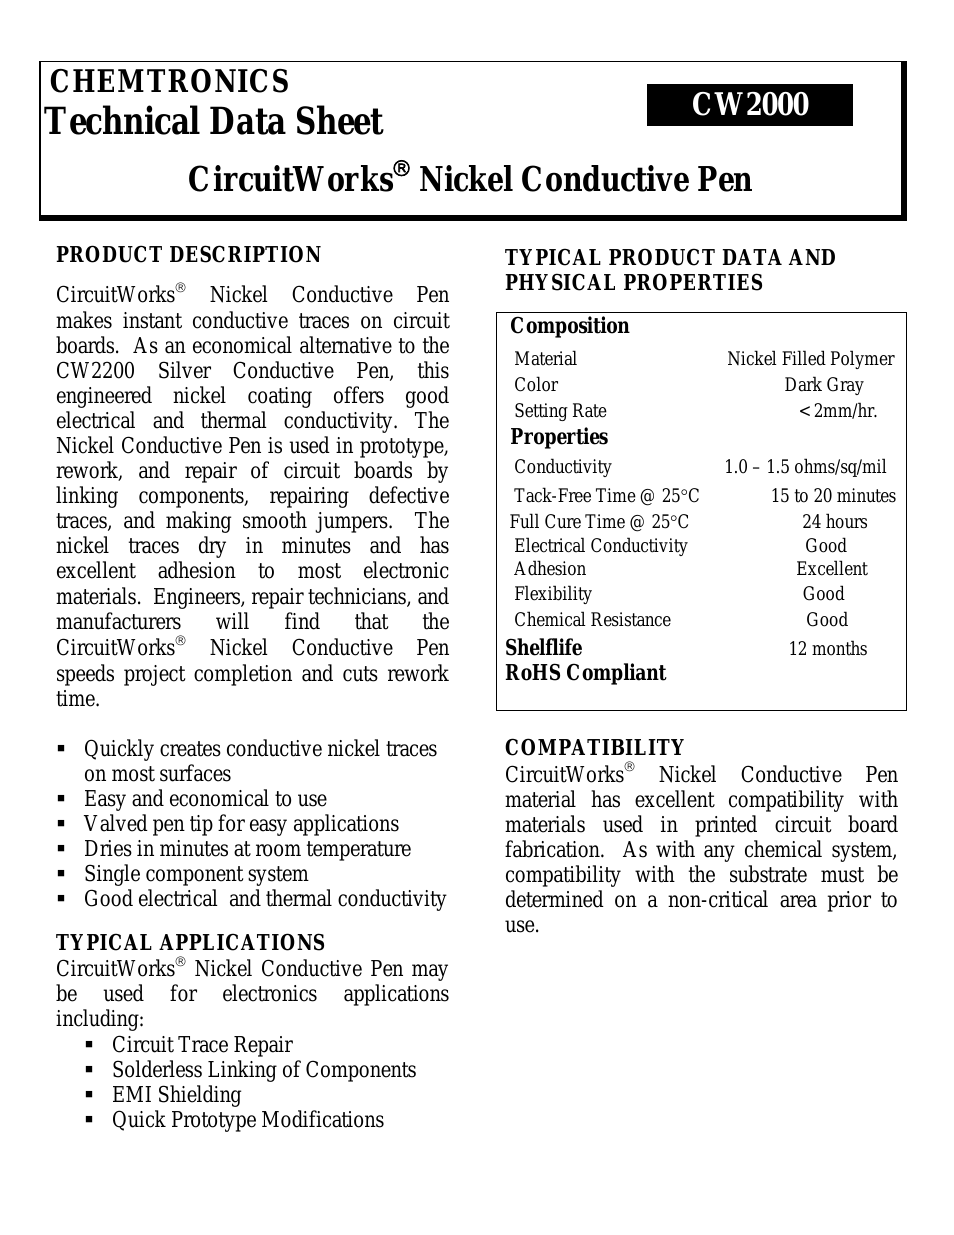 CircuitWorks® Nickel Conductive Pen CW2000